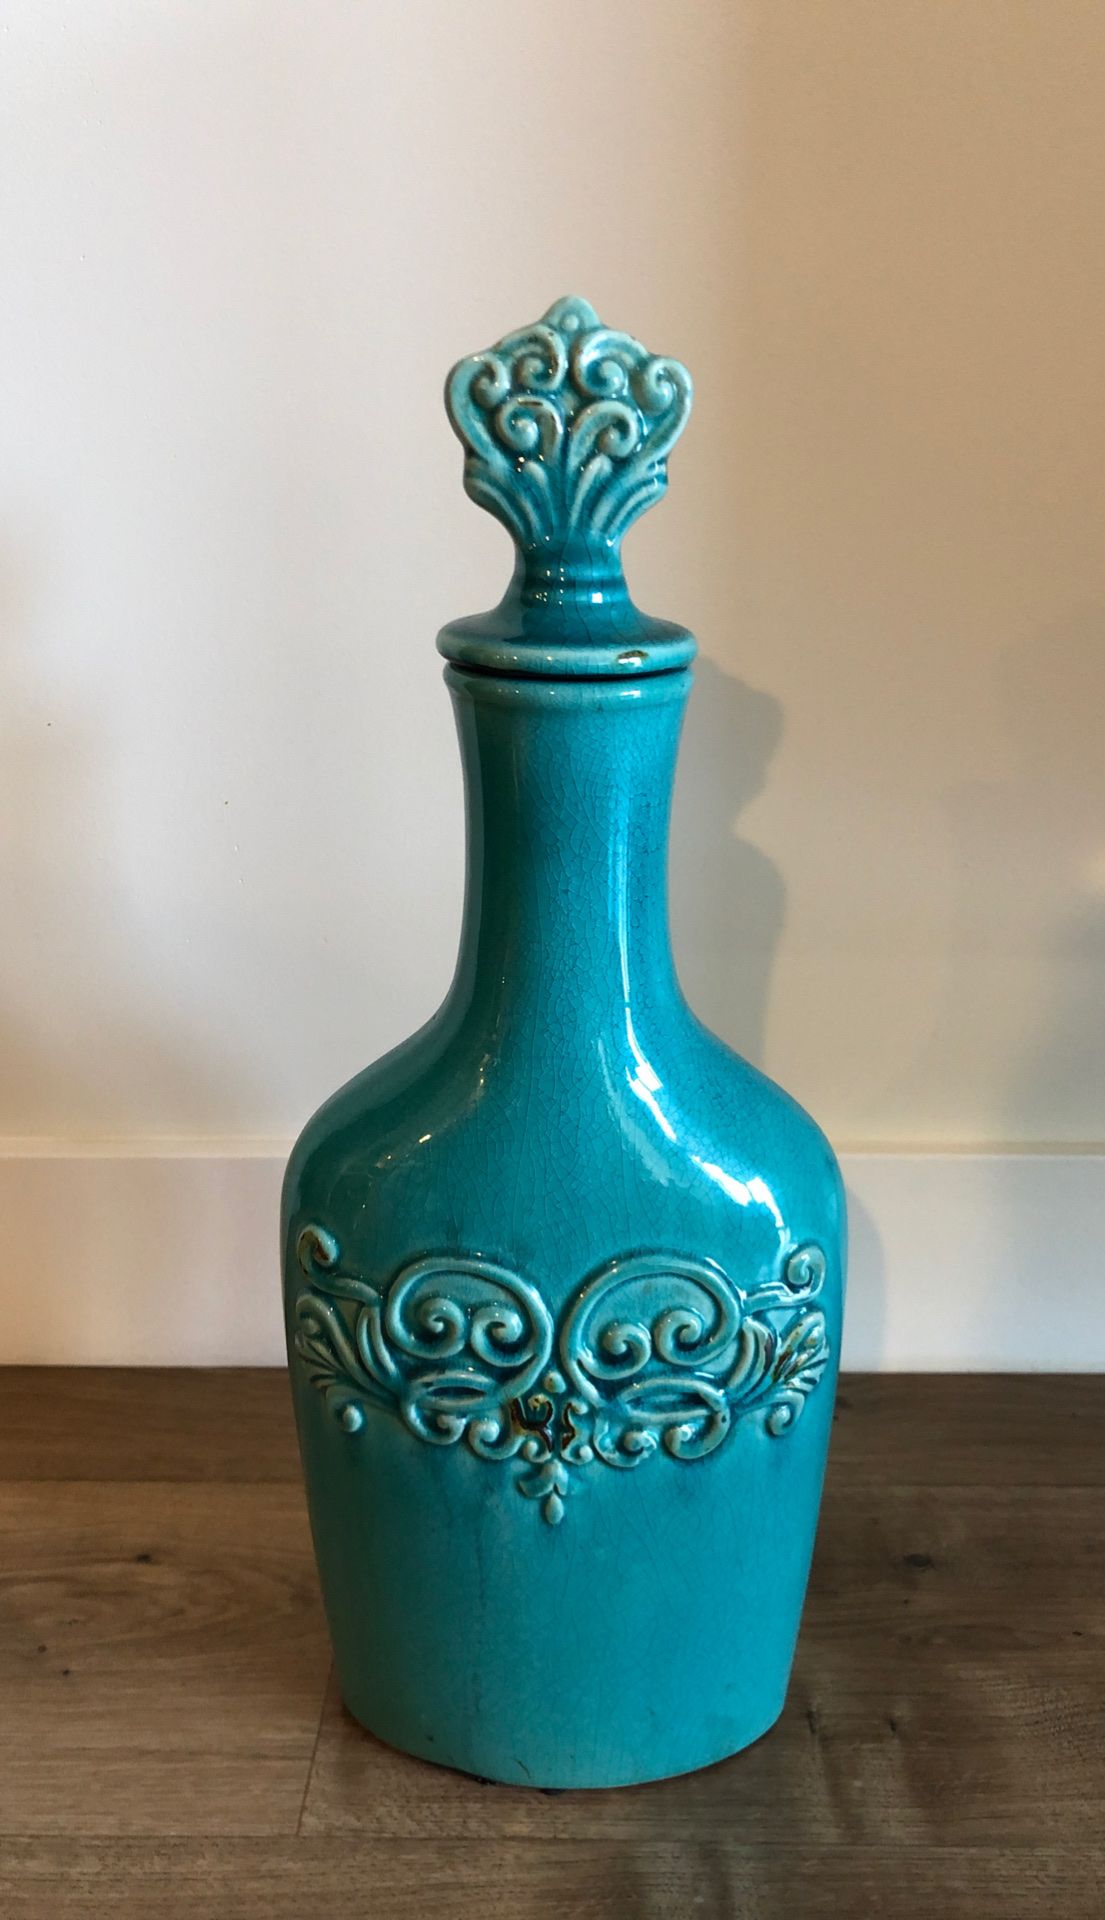 Beautiful ceramic decorative vase